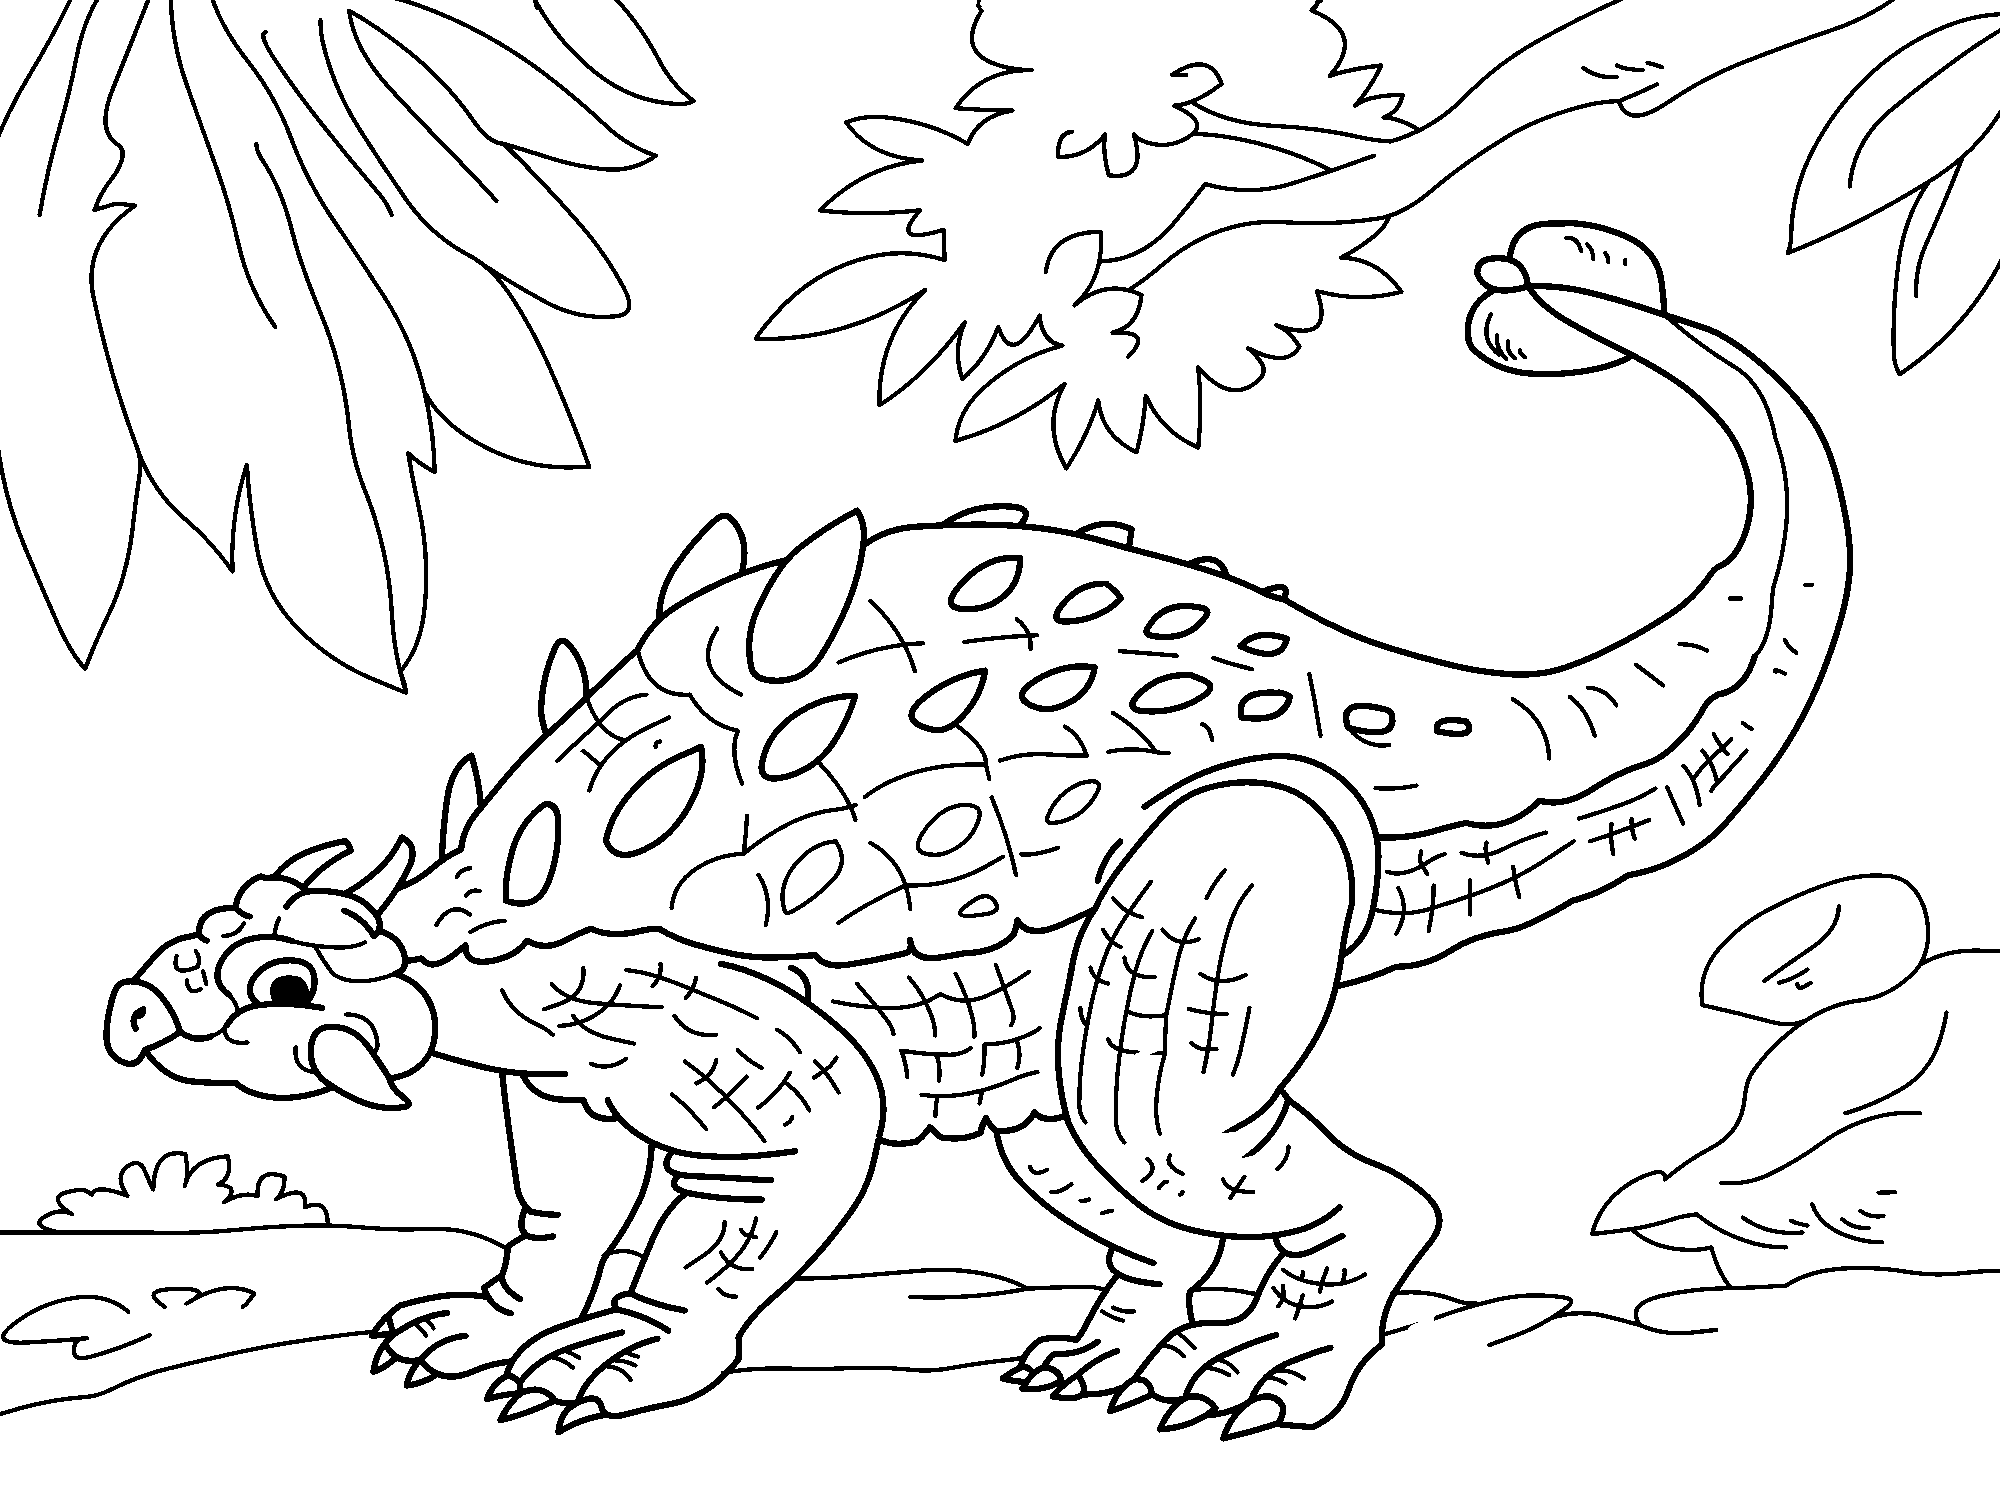 Раскраска анкилозавра Анкилозавр